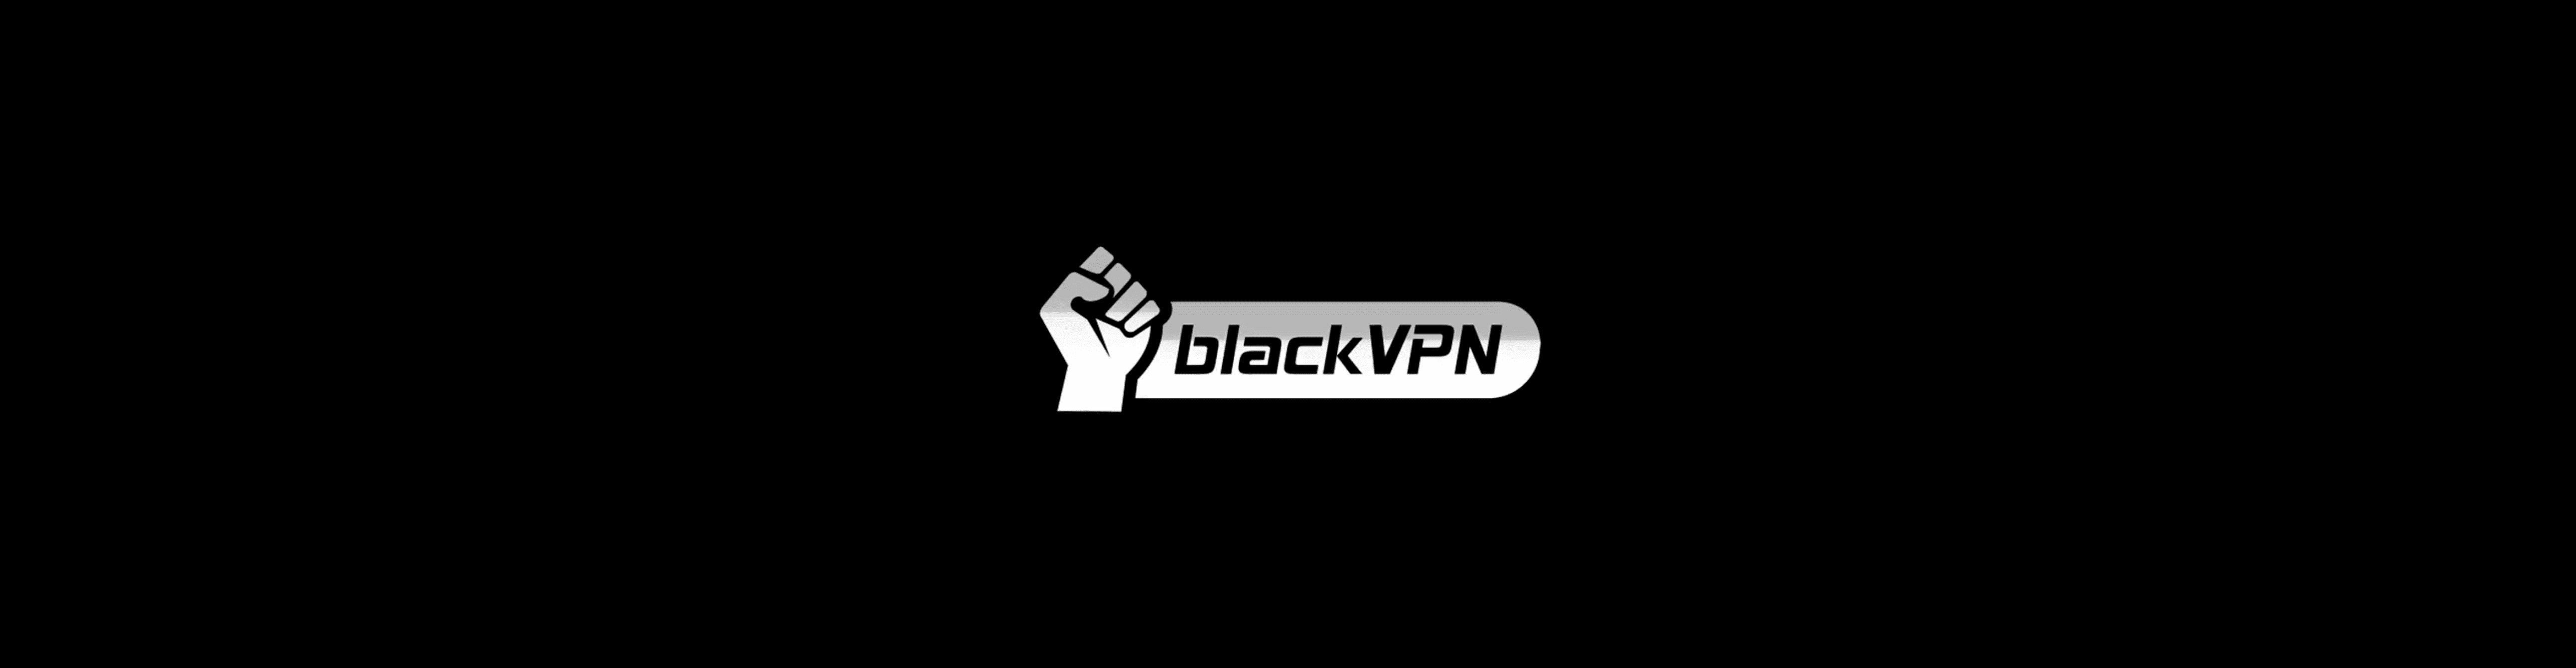 blackVPN